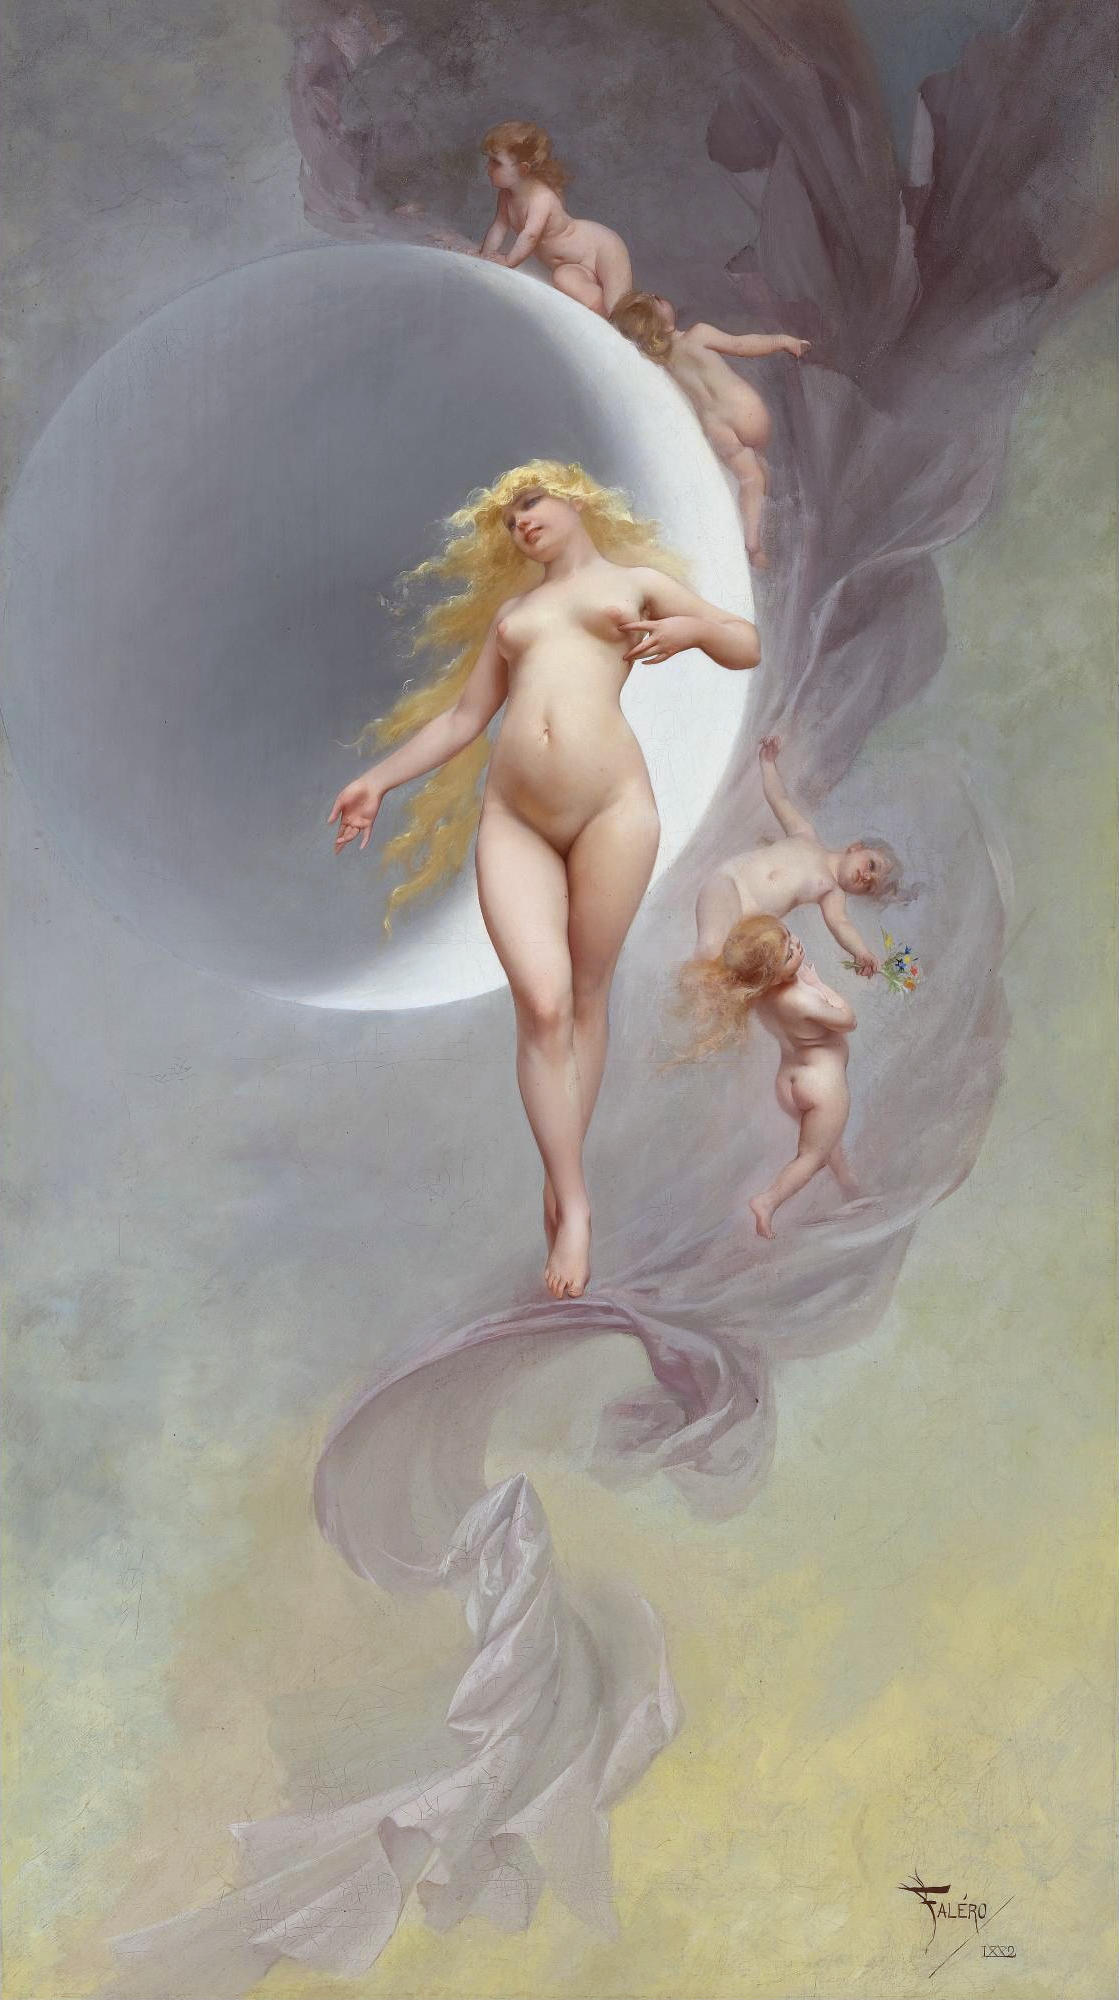 Luis Ricardo Falero, 1851-1896. Планета Венера. 1882. 111.3 х 62.8 см. Частная коллекция